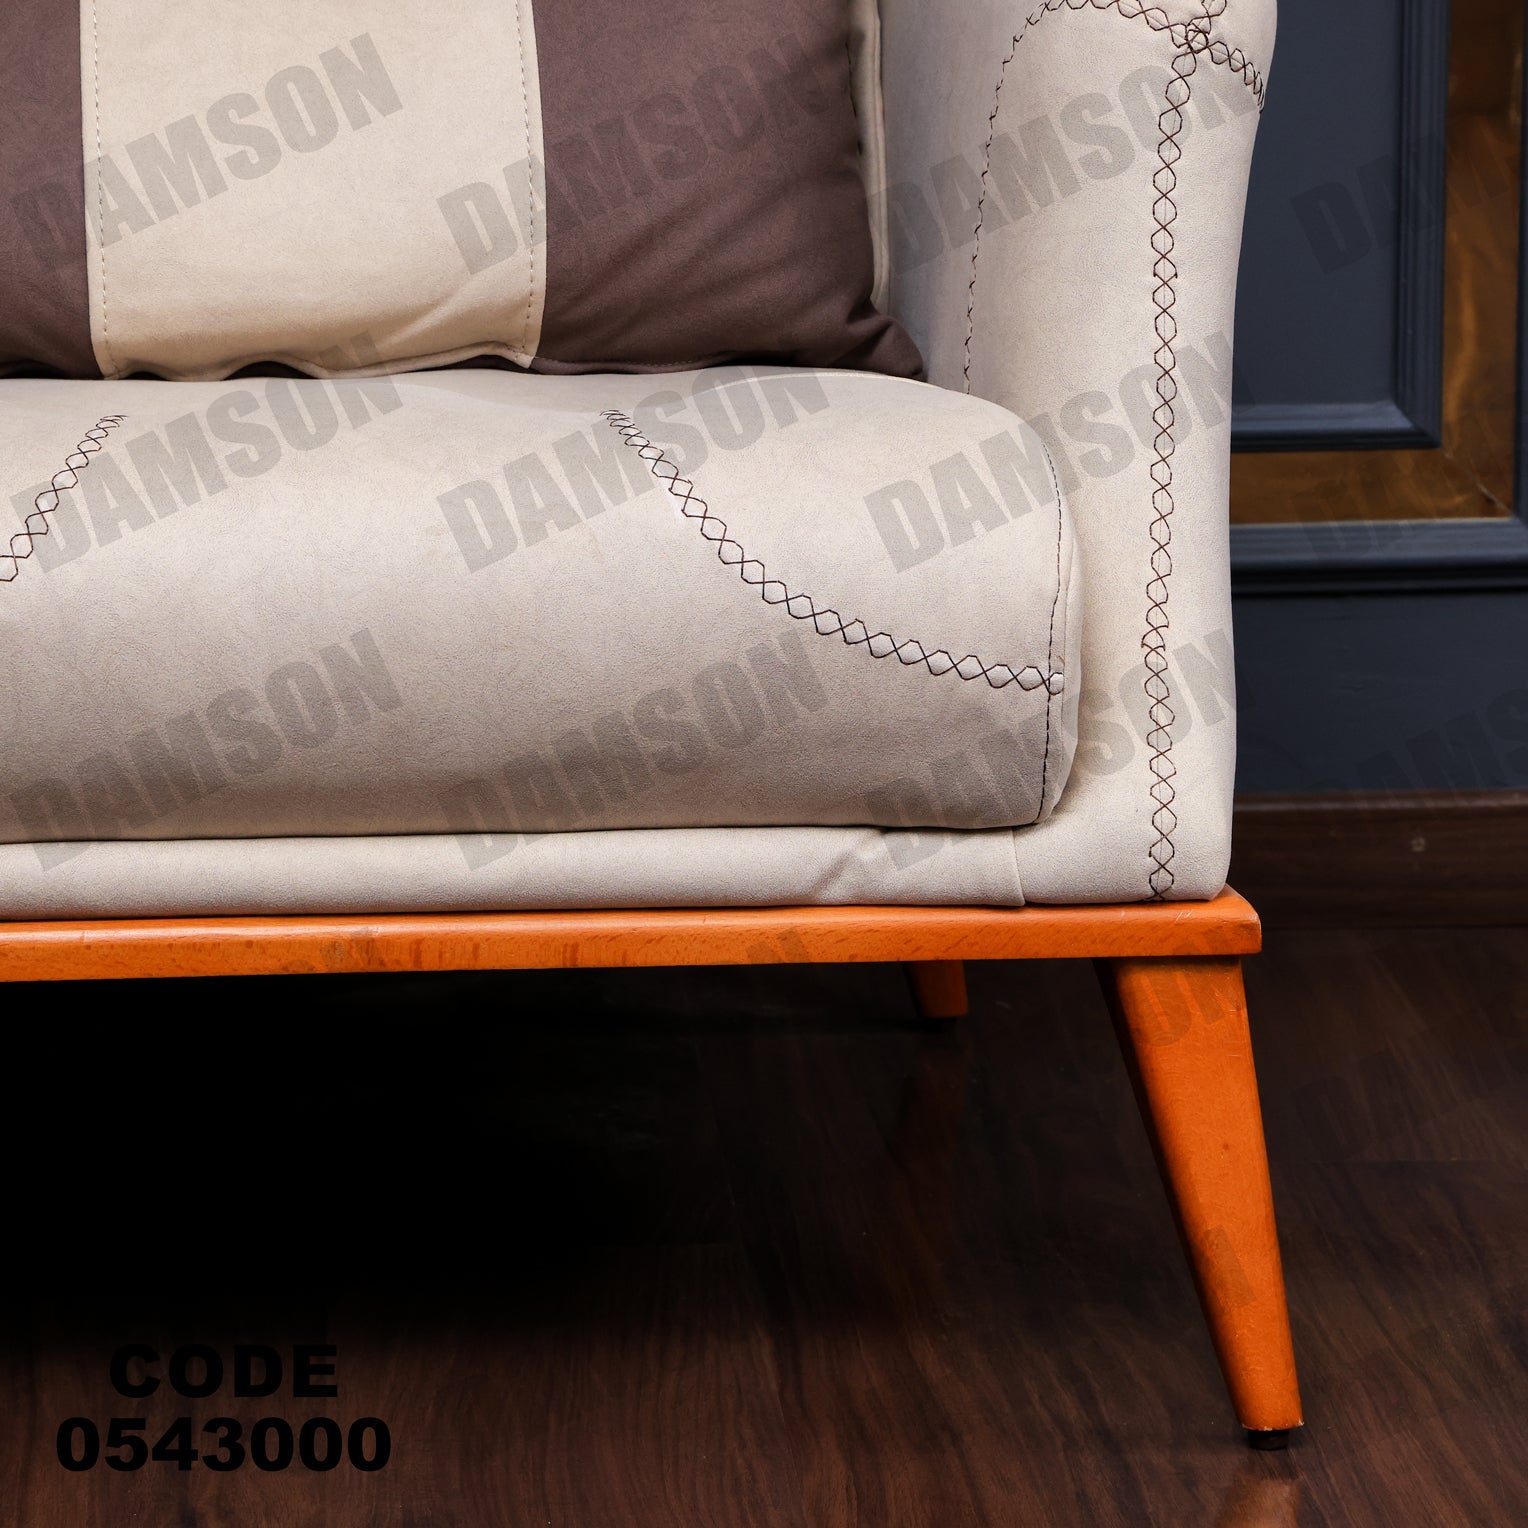 فوتية 2-430 - Damson Furnitureفوتية 2-430